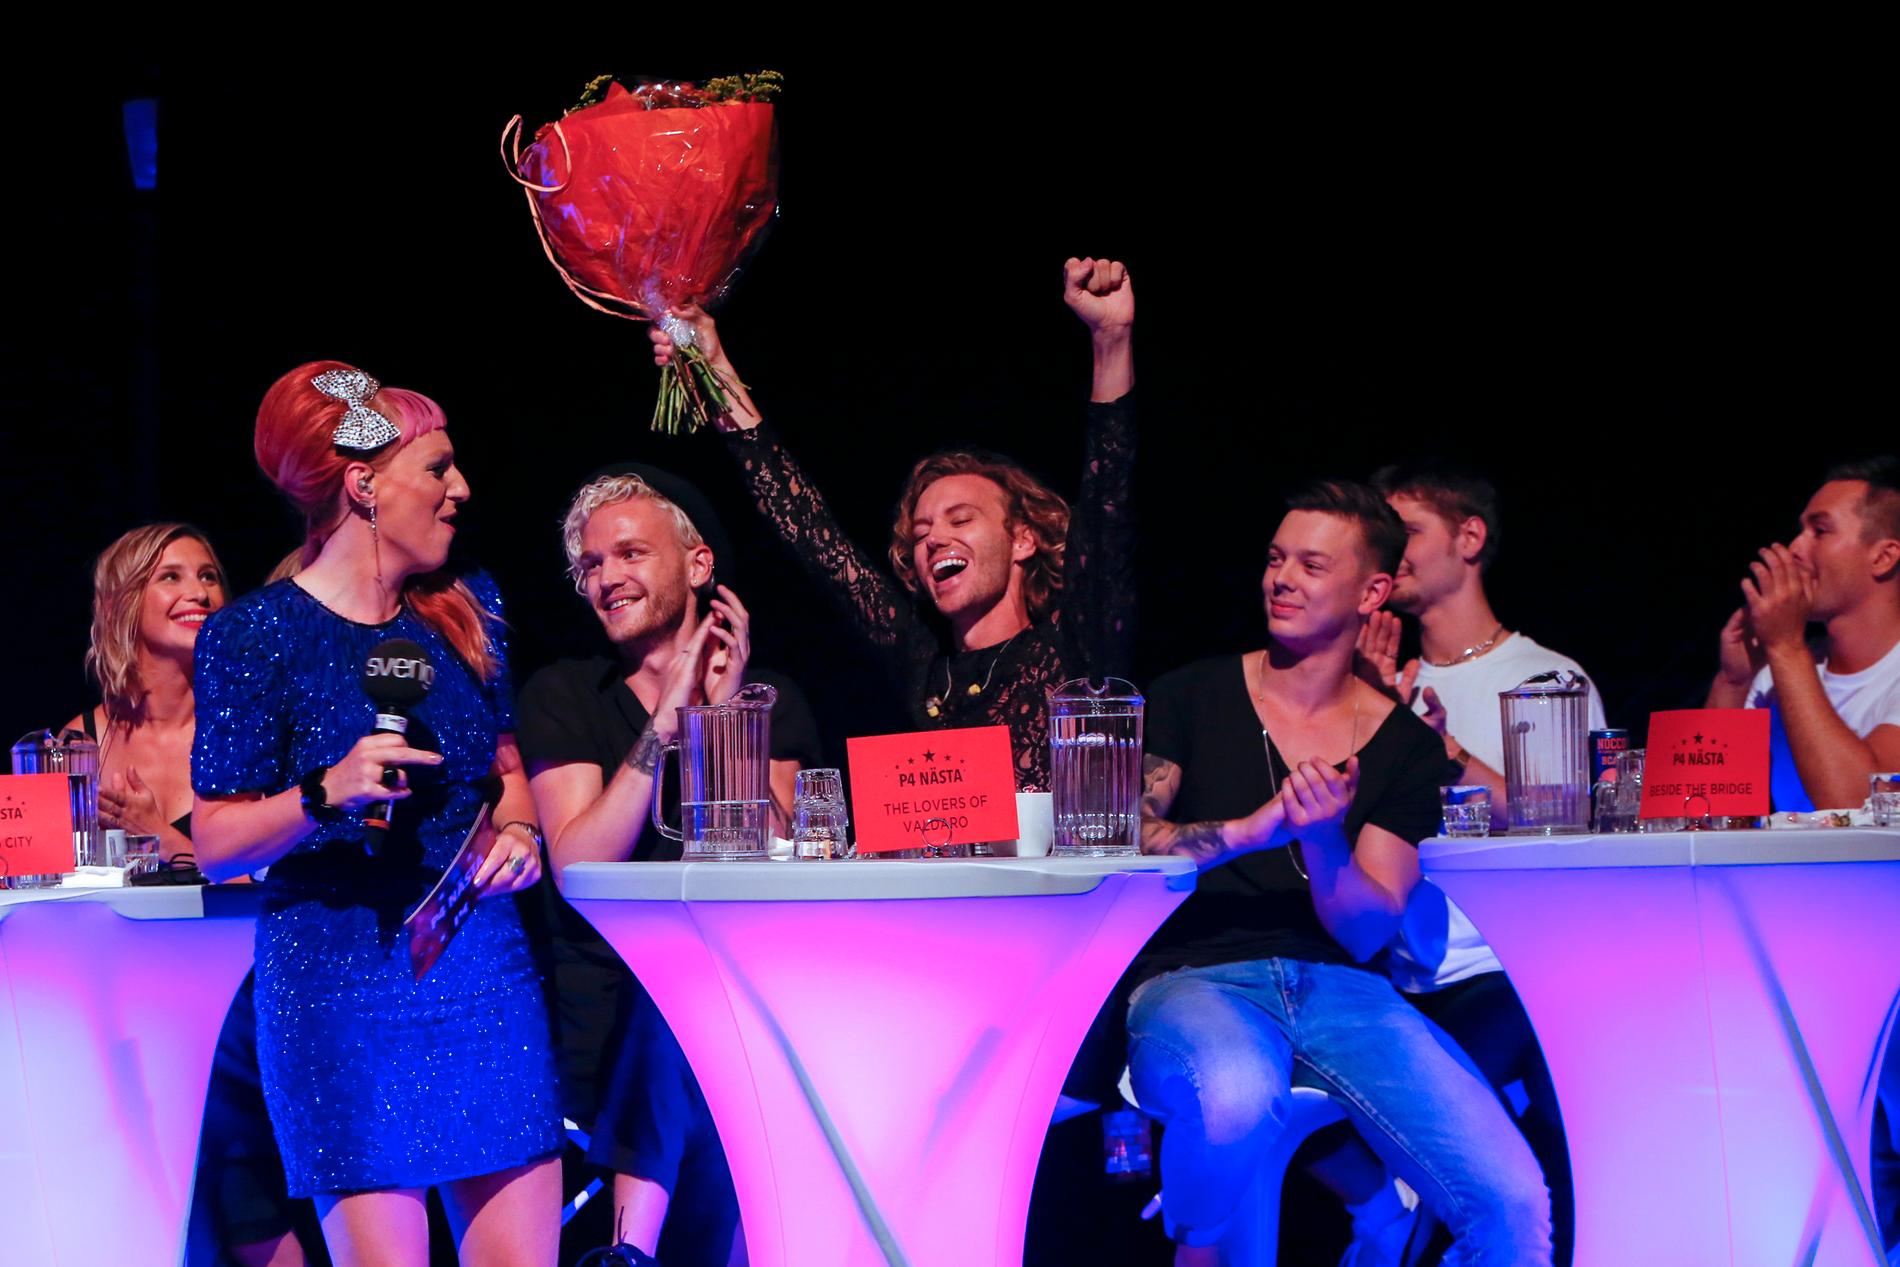 The Lovers of Valdaro går vidare till Melodifestivalen 2019.